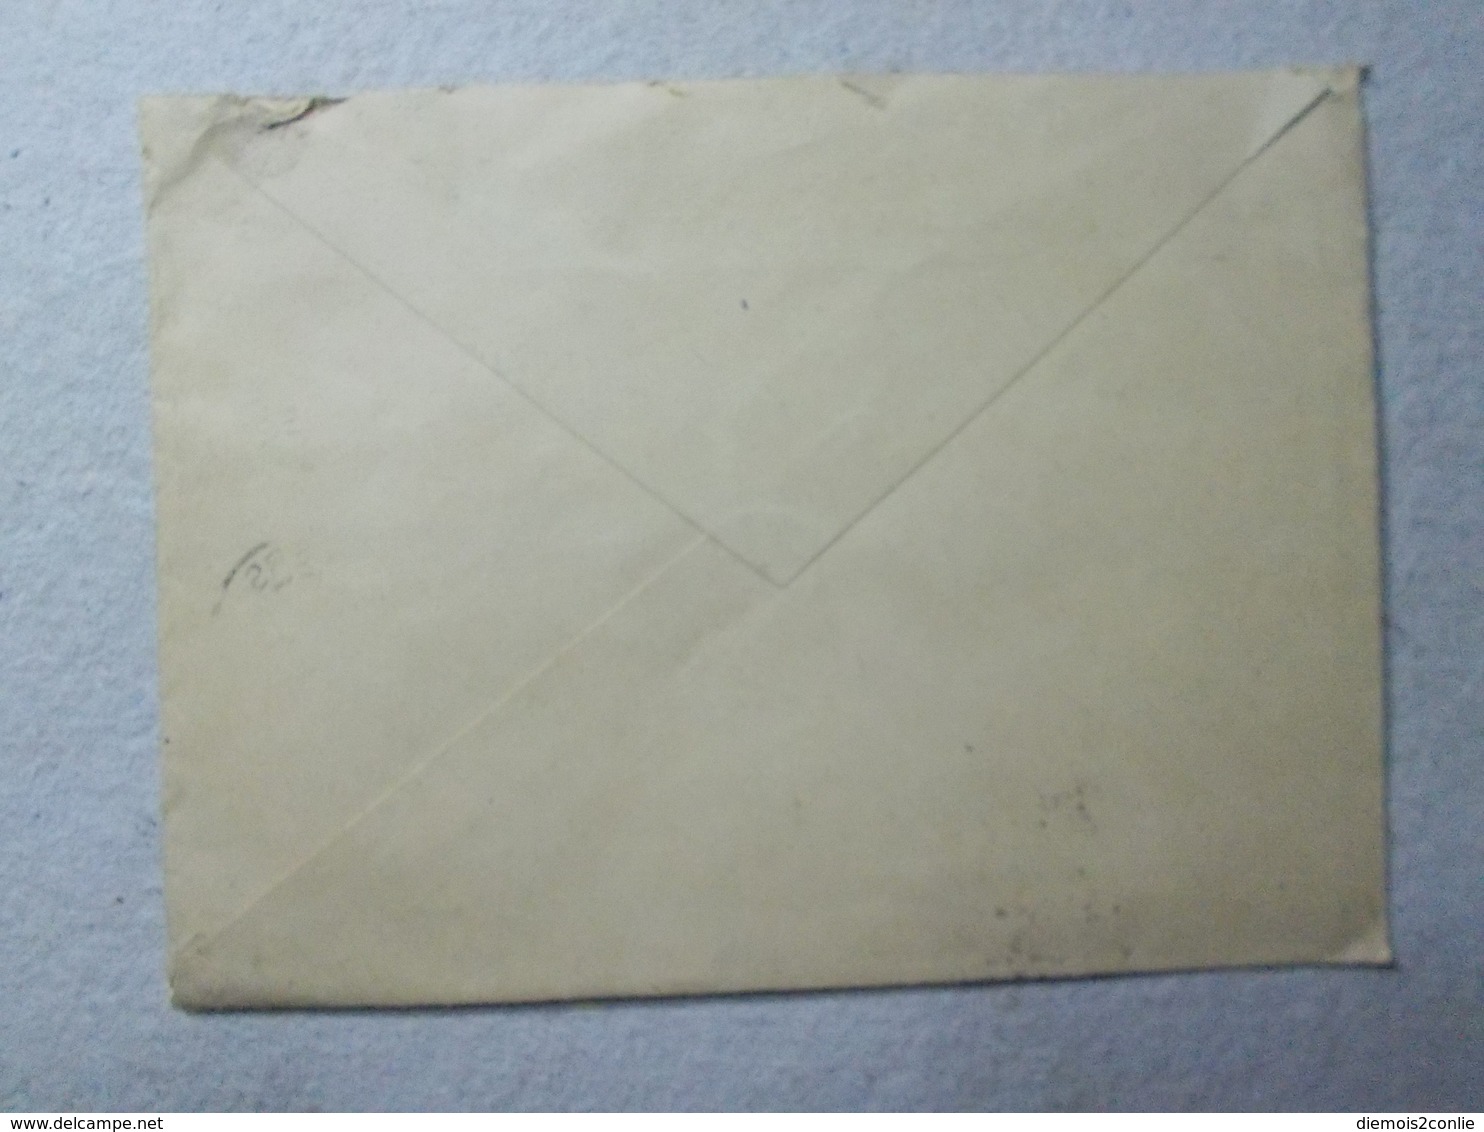 Marcophilie - Lettre Enveloppe Obliteration Timbre - Publicite Professionnelle (2444) - 1877-1920: Période Semi Moderne